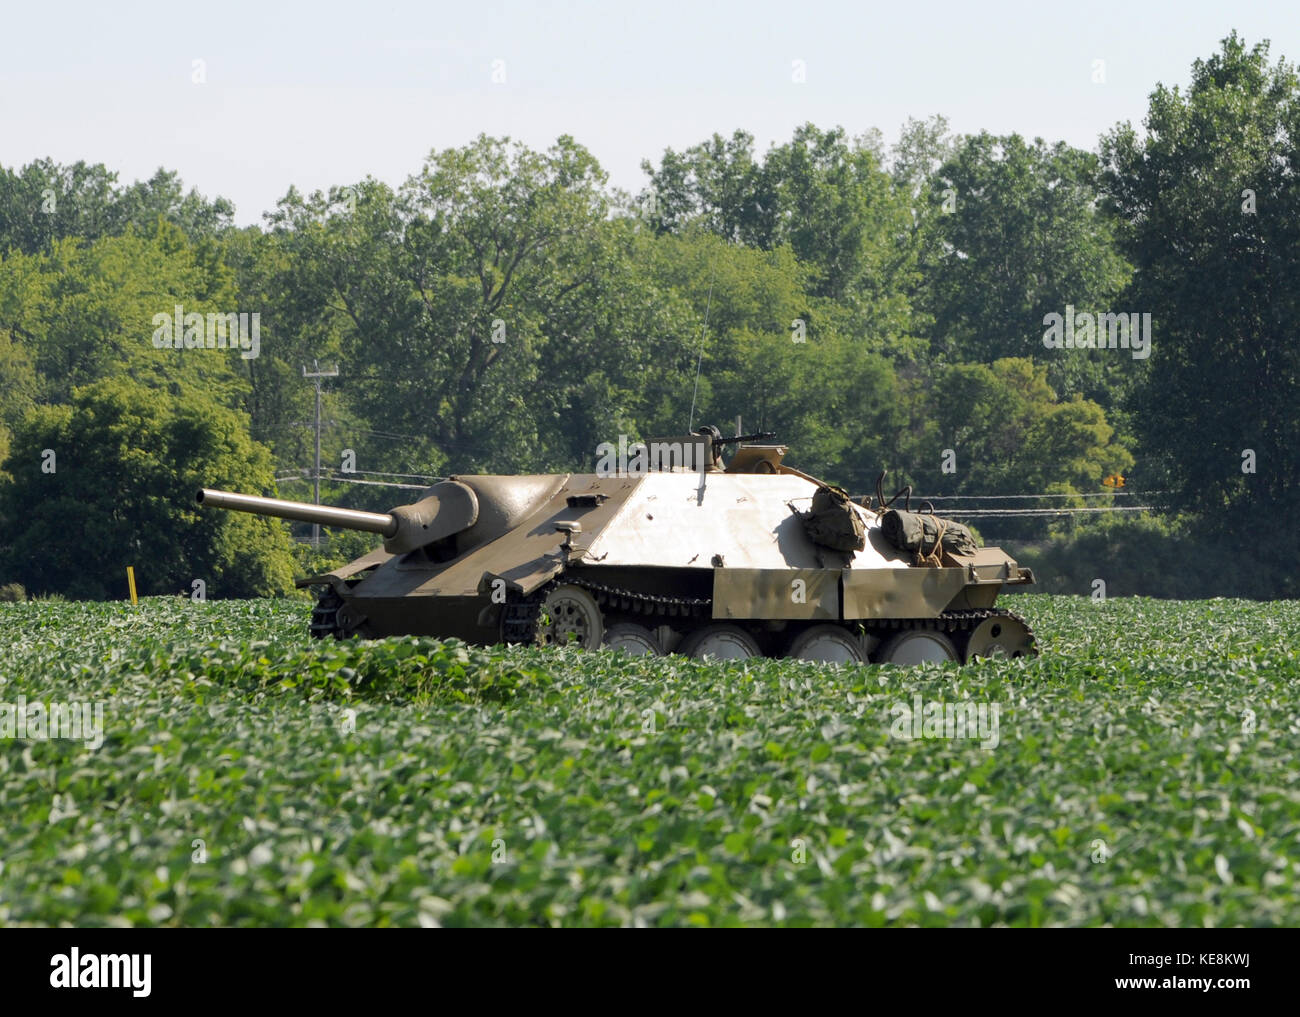 Wolrd War II era tank in a field Stock Photo